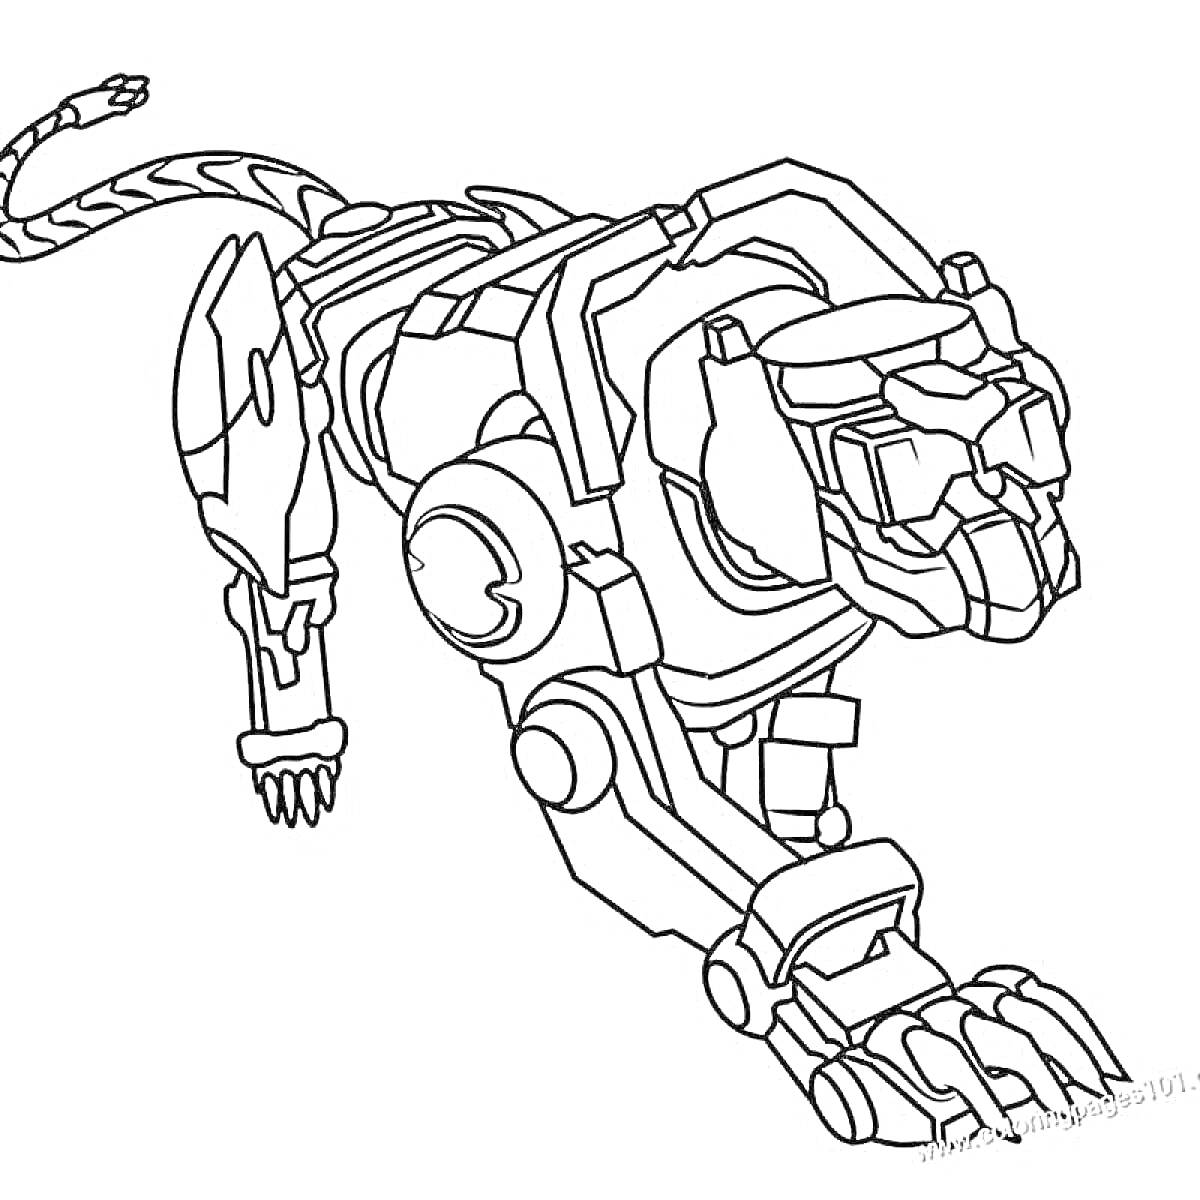 Раскраска Роботизированный пантерообразный лев с длинным хвостом